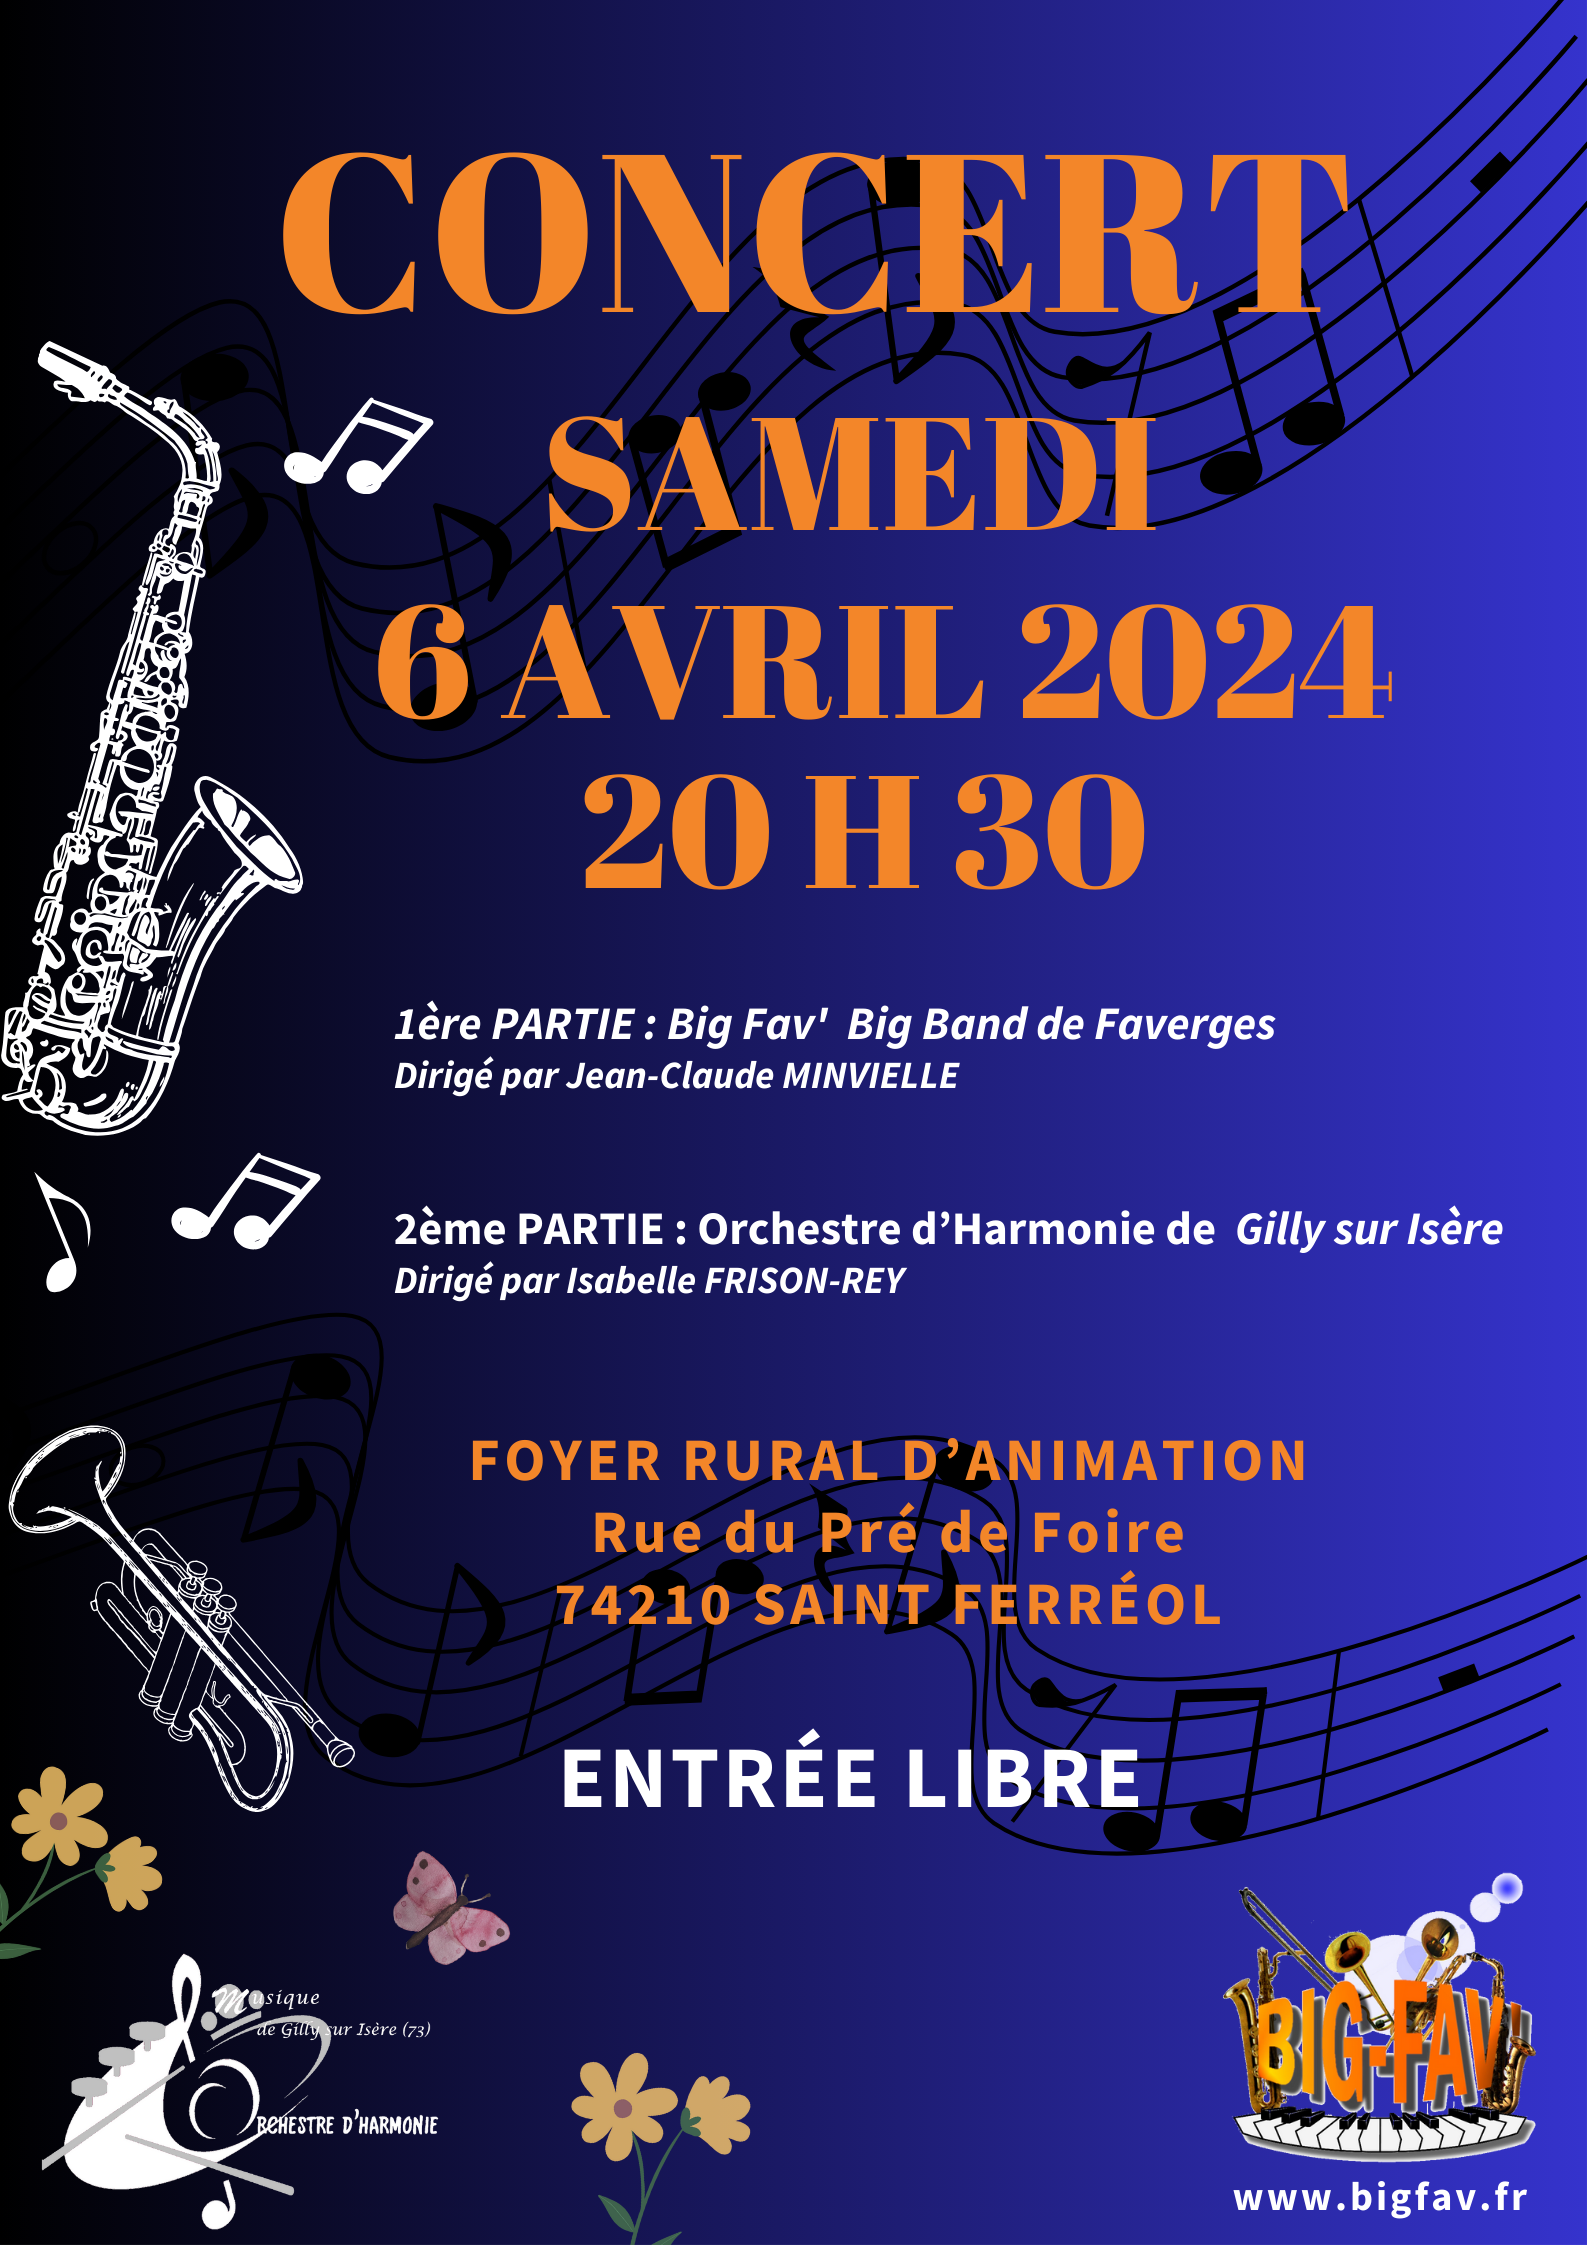 Concert 6 Avril 2024 avec L'Orchestre d'Harmonie de Gilly sur Isère